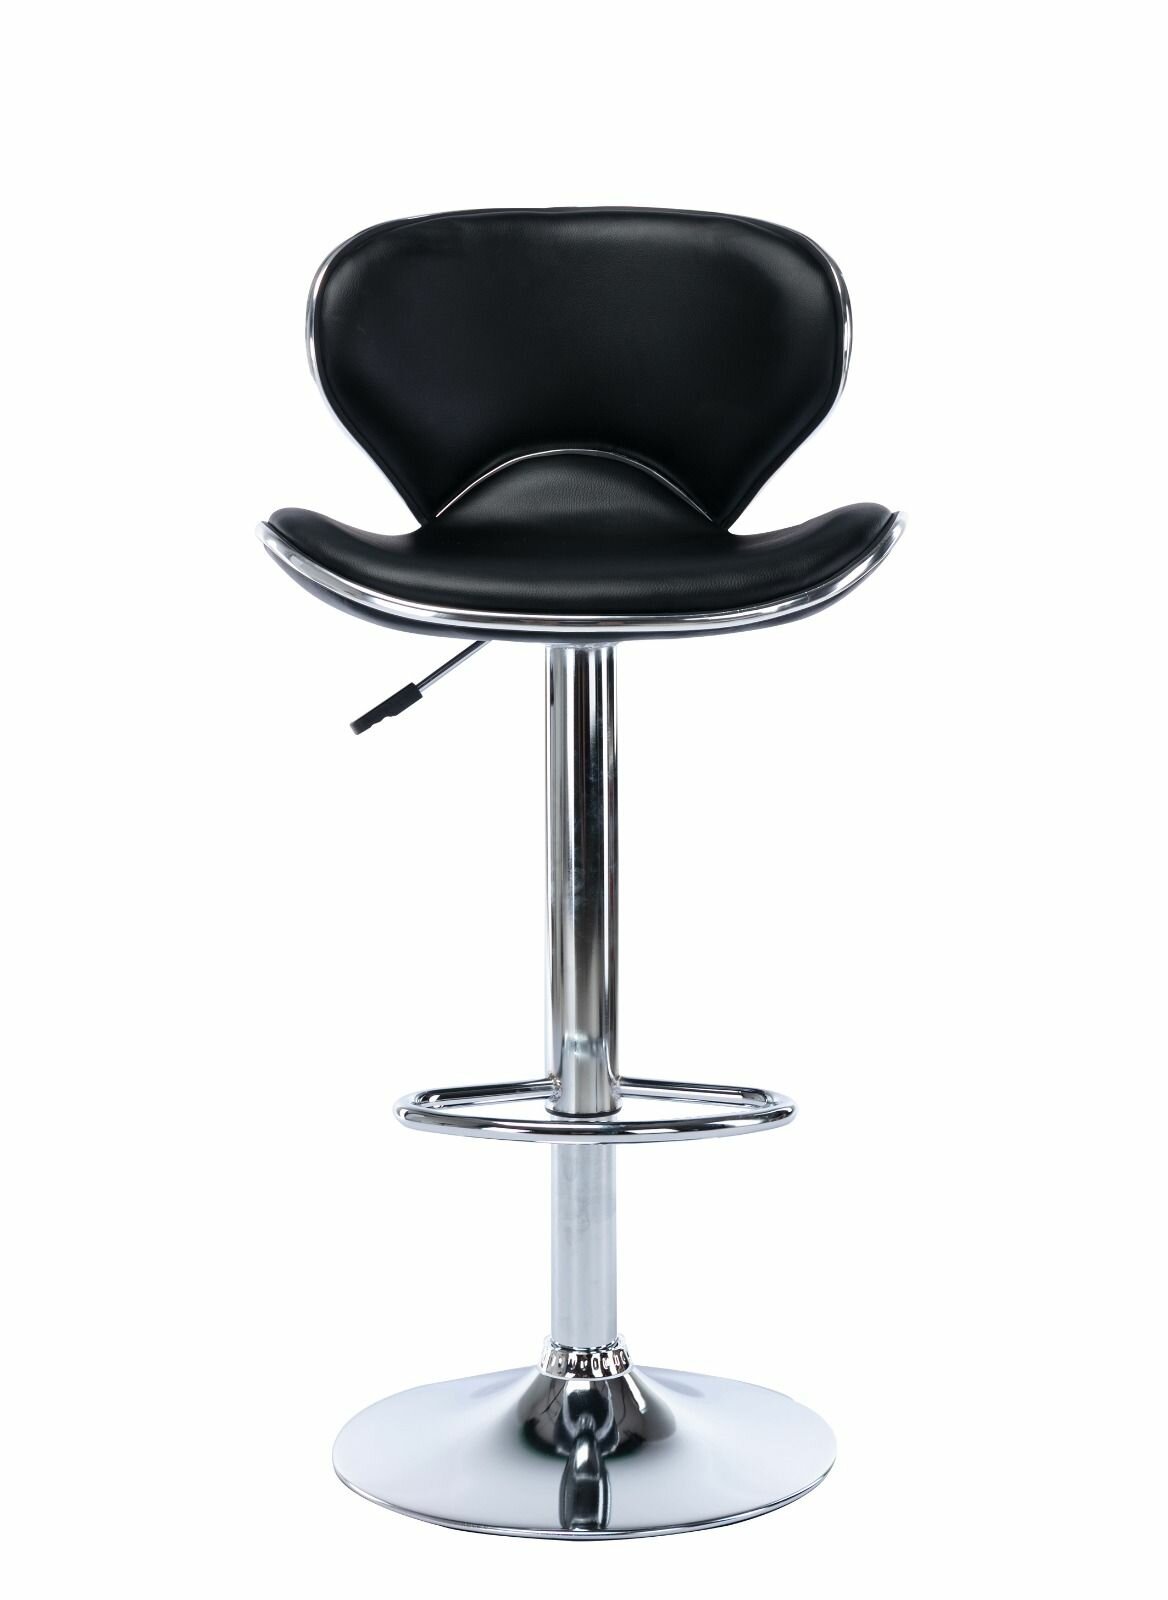 Комплект барных стульев из 2 шт. Mizomed LUXE черный